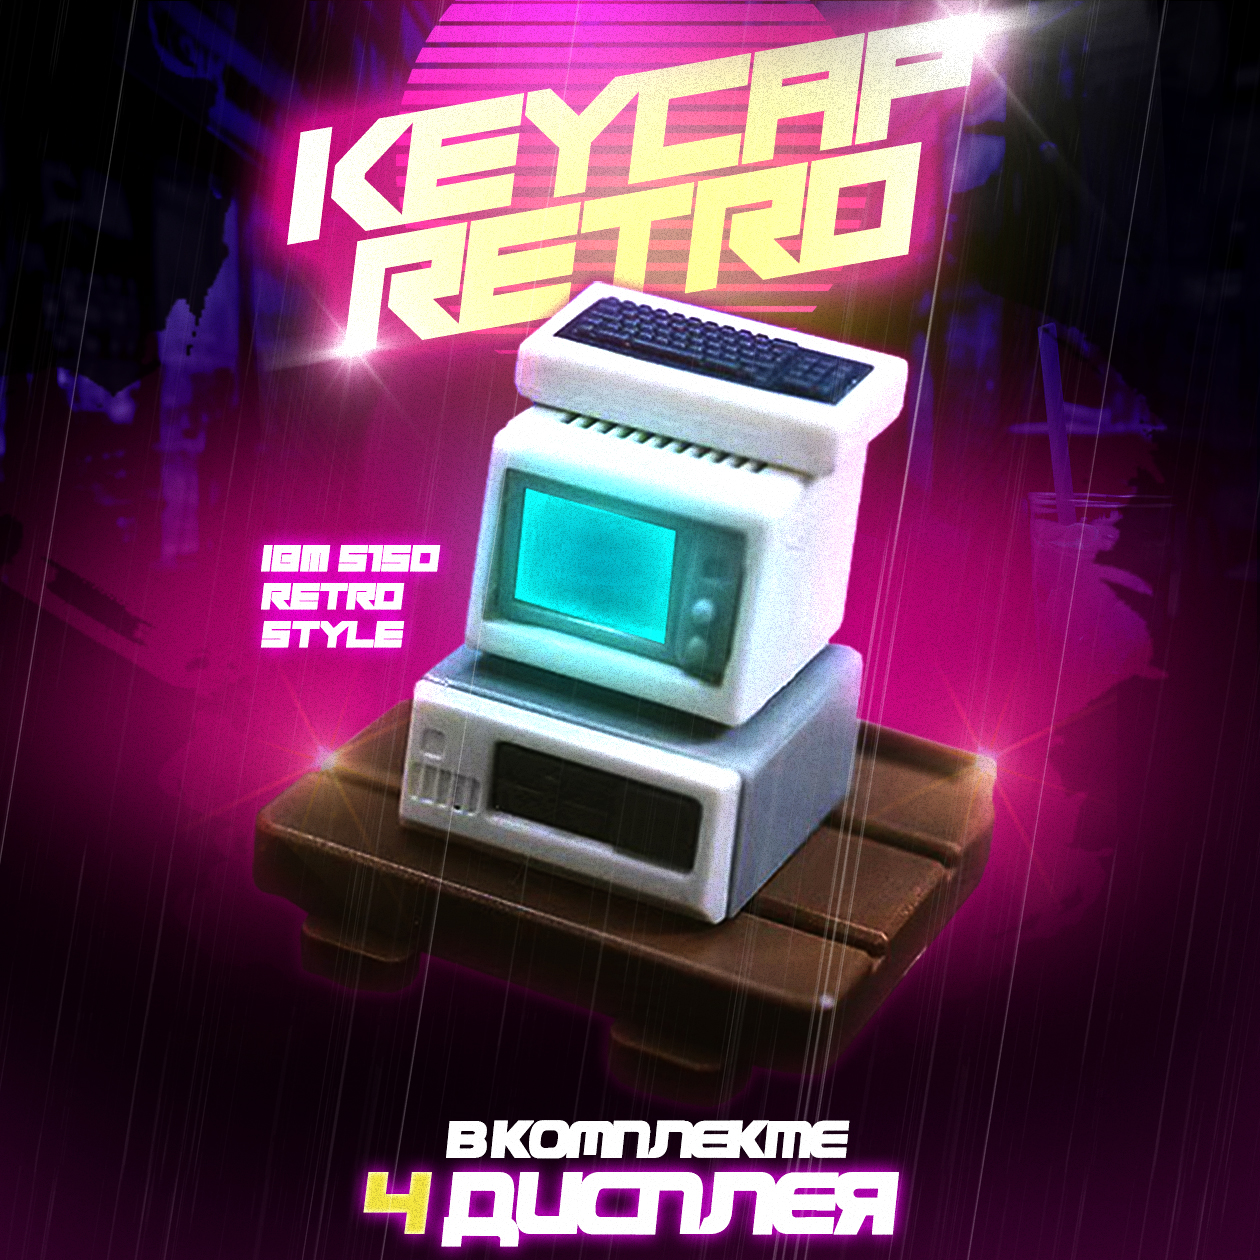 Retro Keycap IBM 5150 для механической клавиатуры 4 дисплея